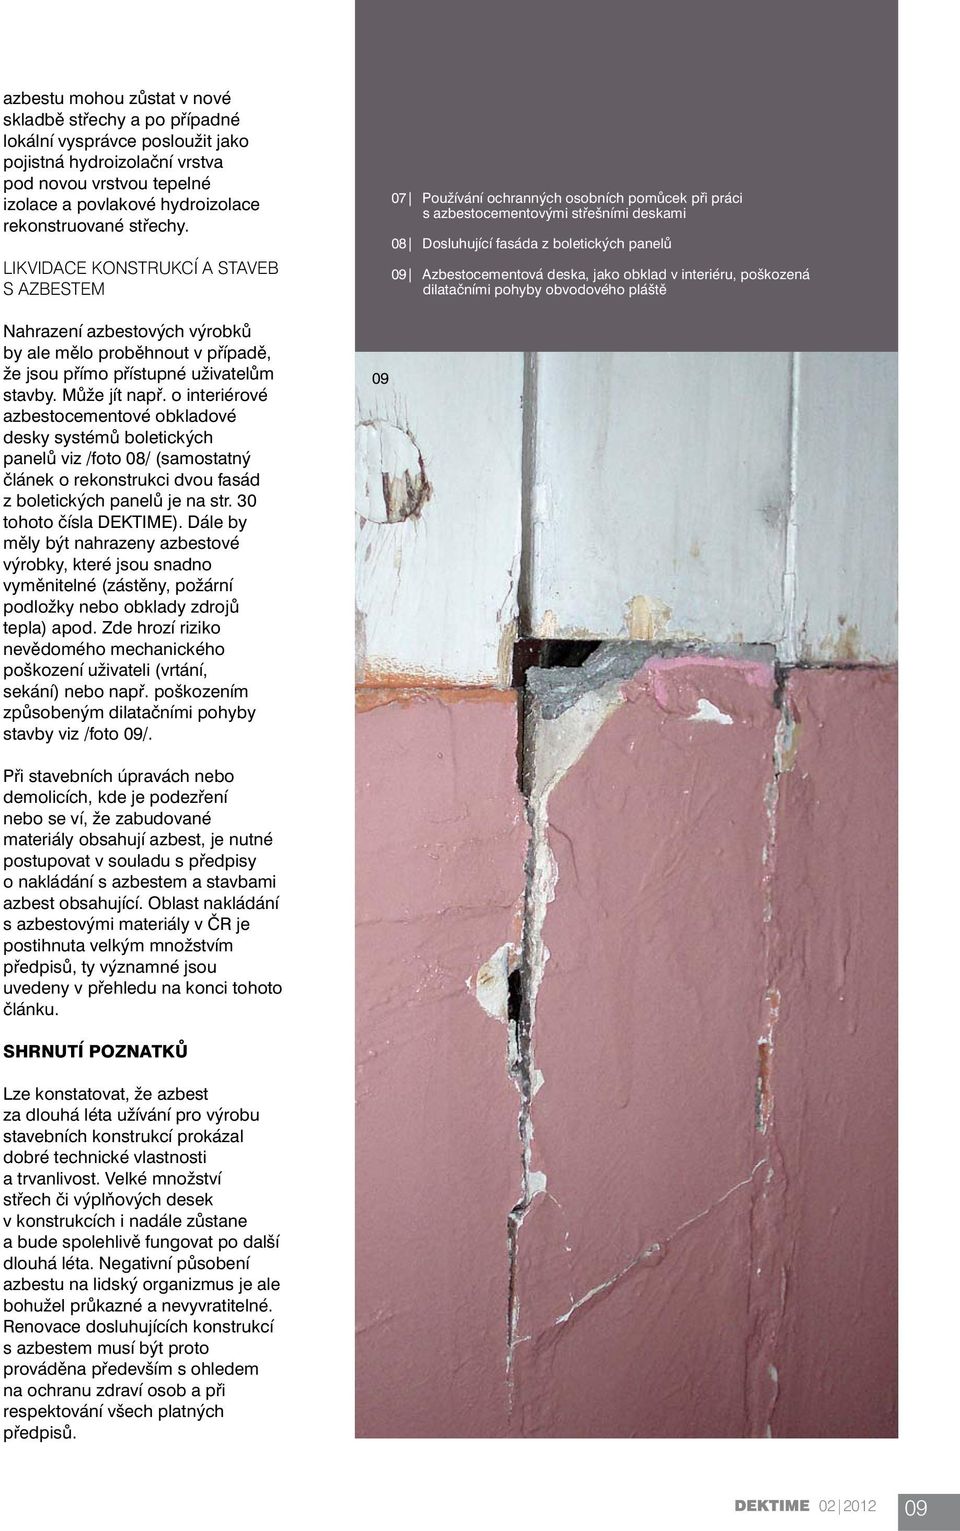 o interiérové azbestocementové obkladové desky systémů boletických panelů viz /foto 08/ (samostatný článek o rekonstrukci dvou fasád z boletických panelů je na str. 30 tohoto čísla DEKTIME).